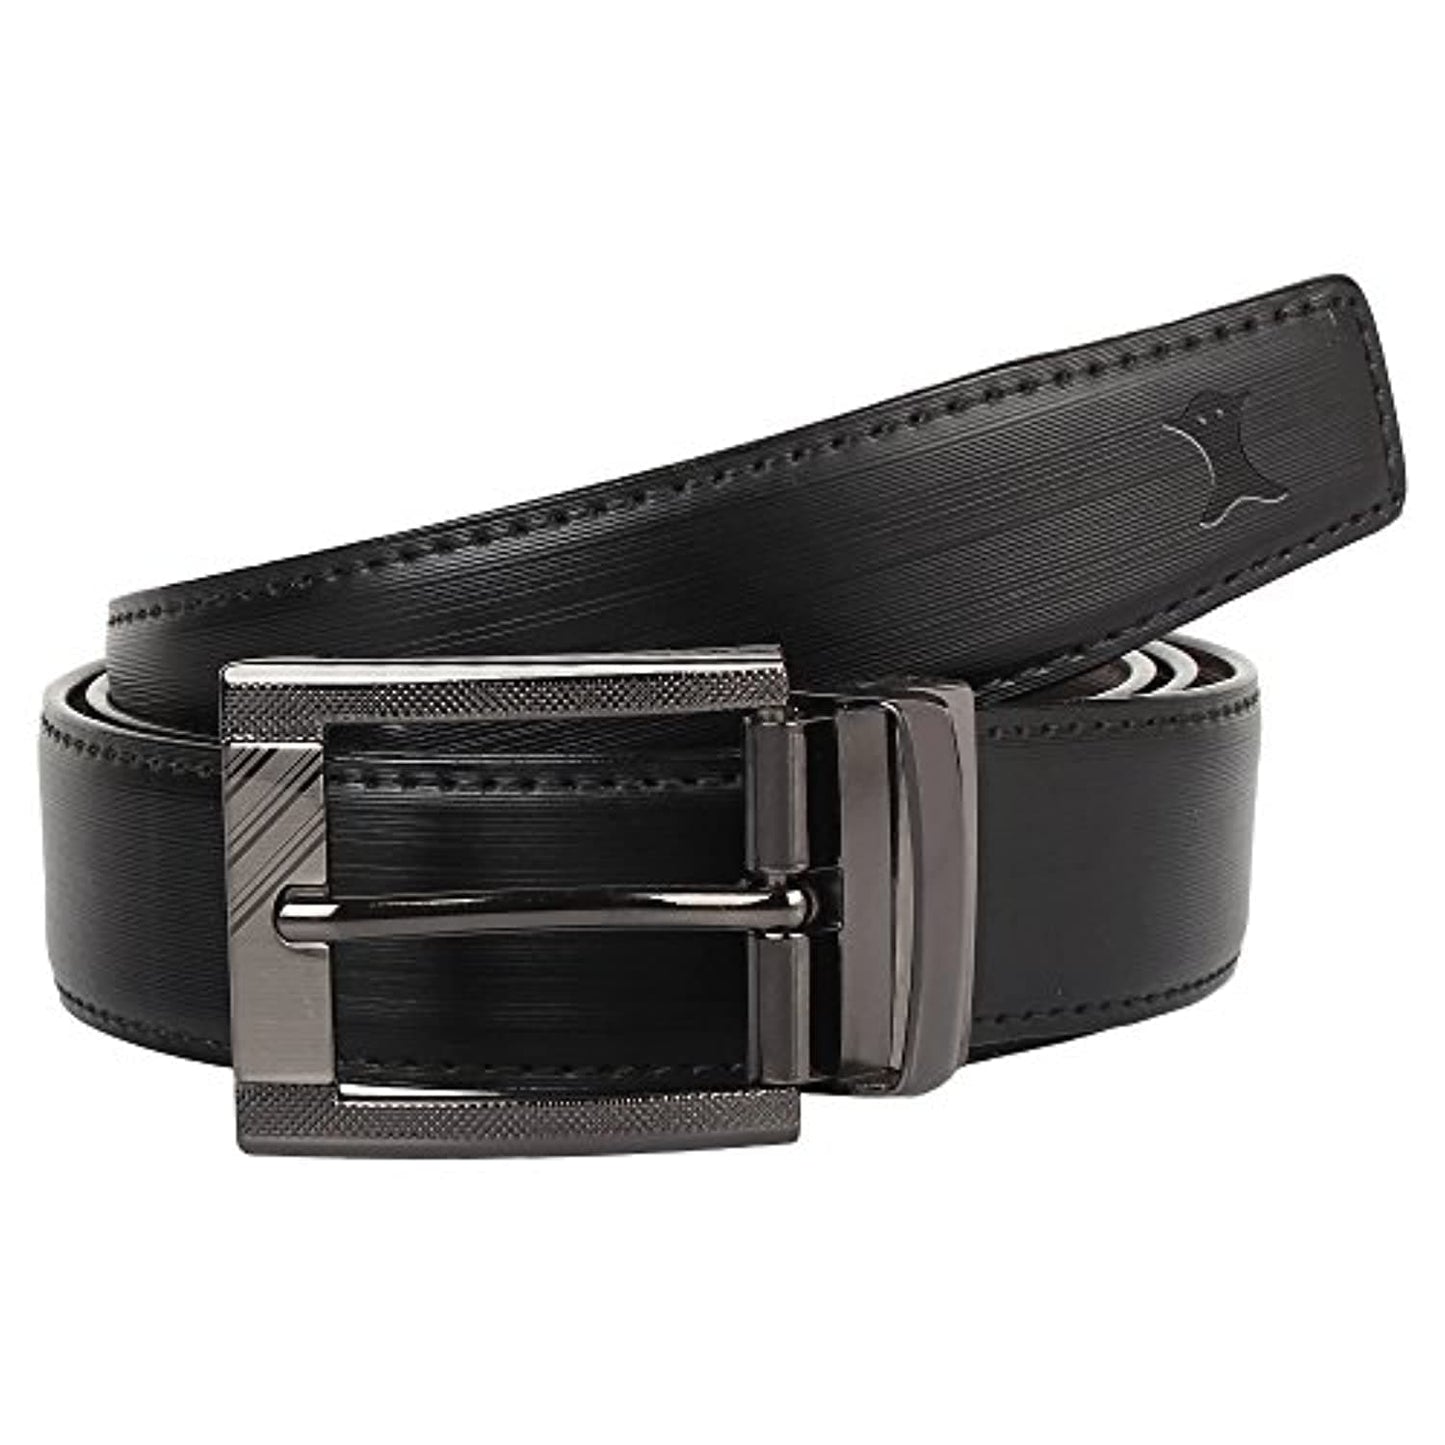 PU-Leather Formal Black/Brown Belt For Men